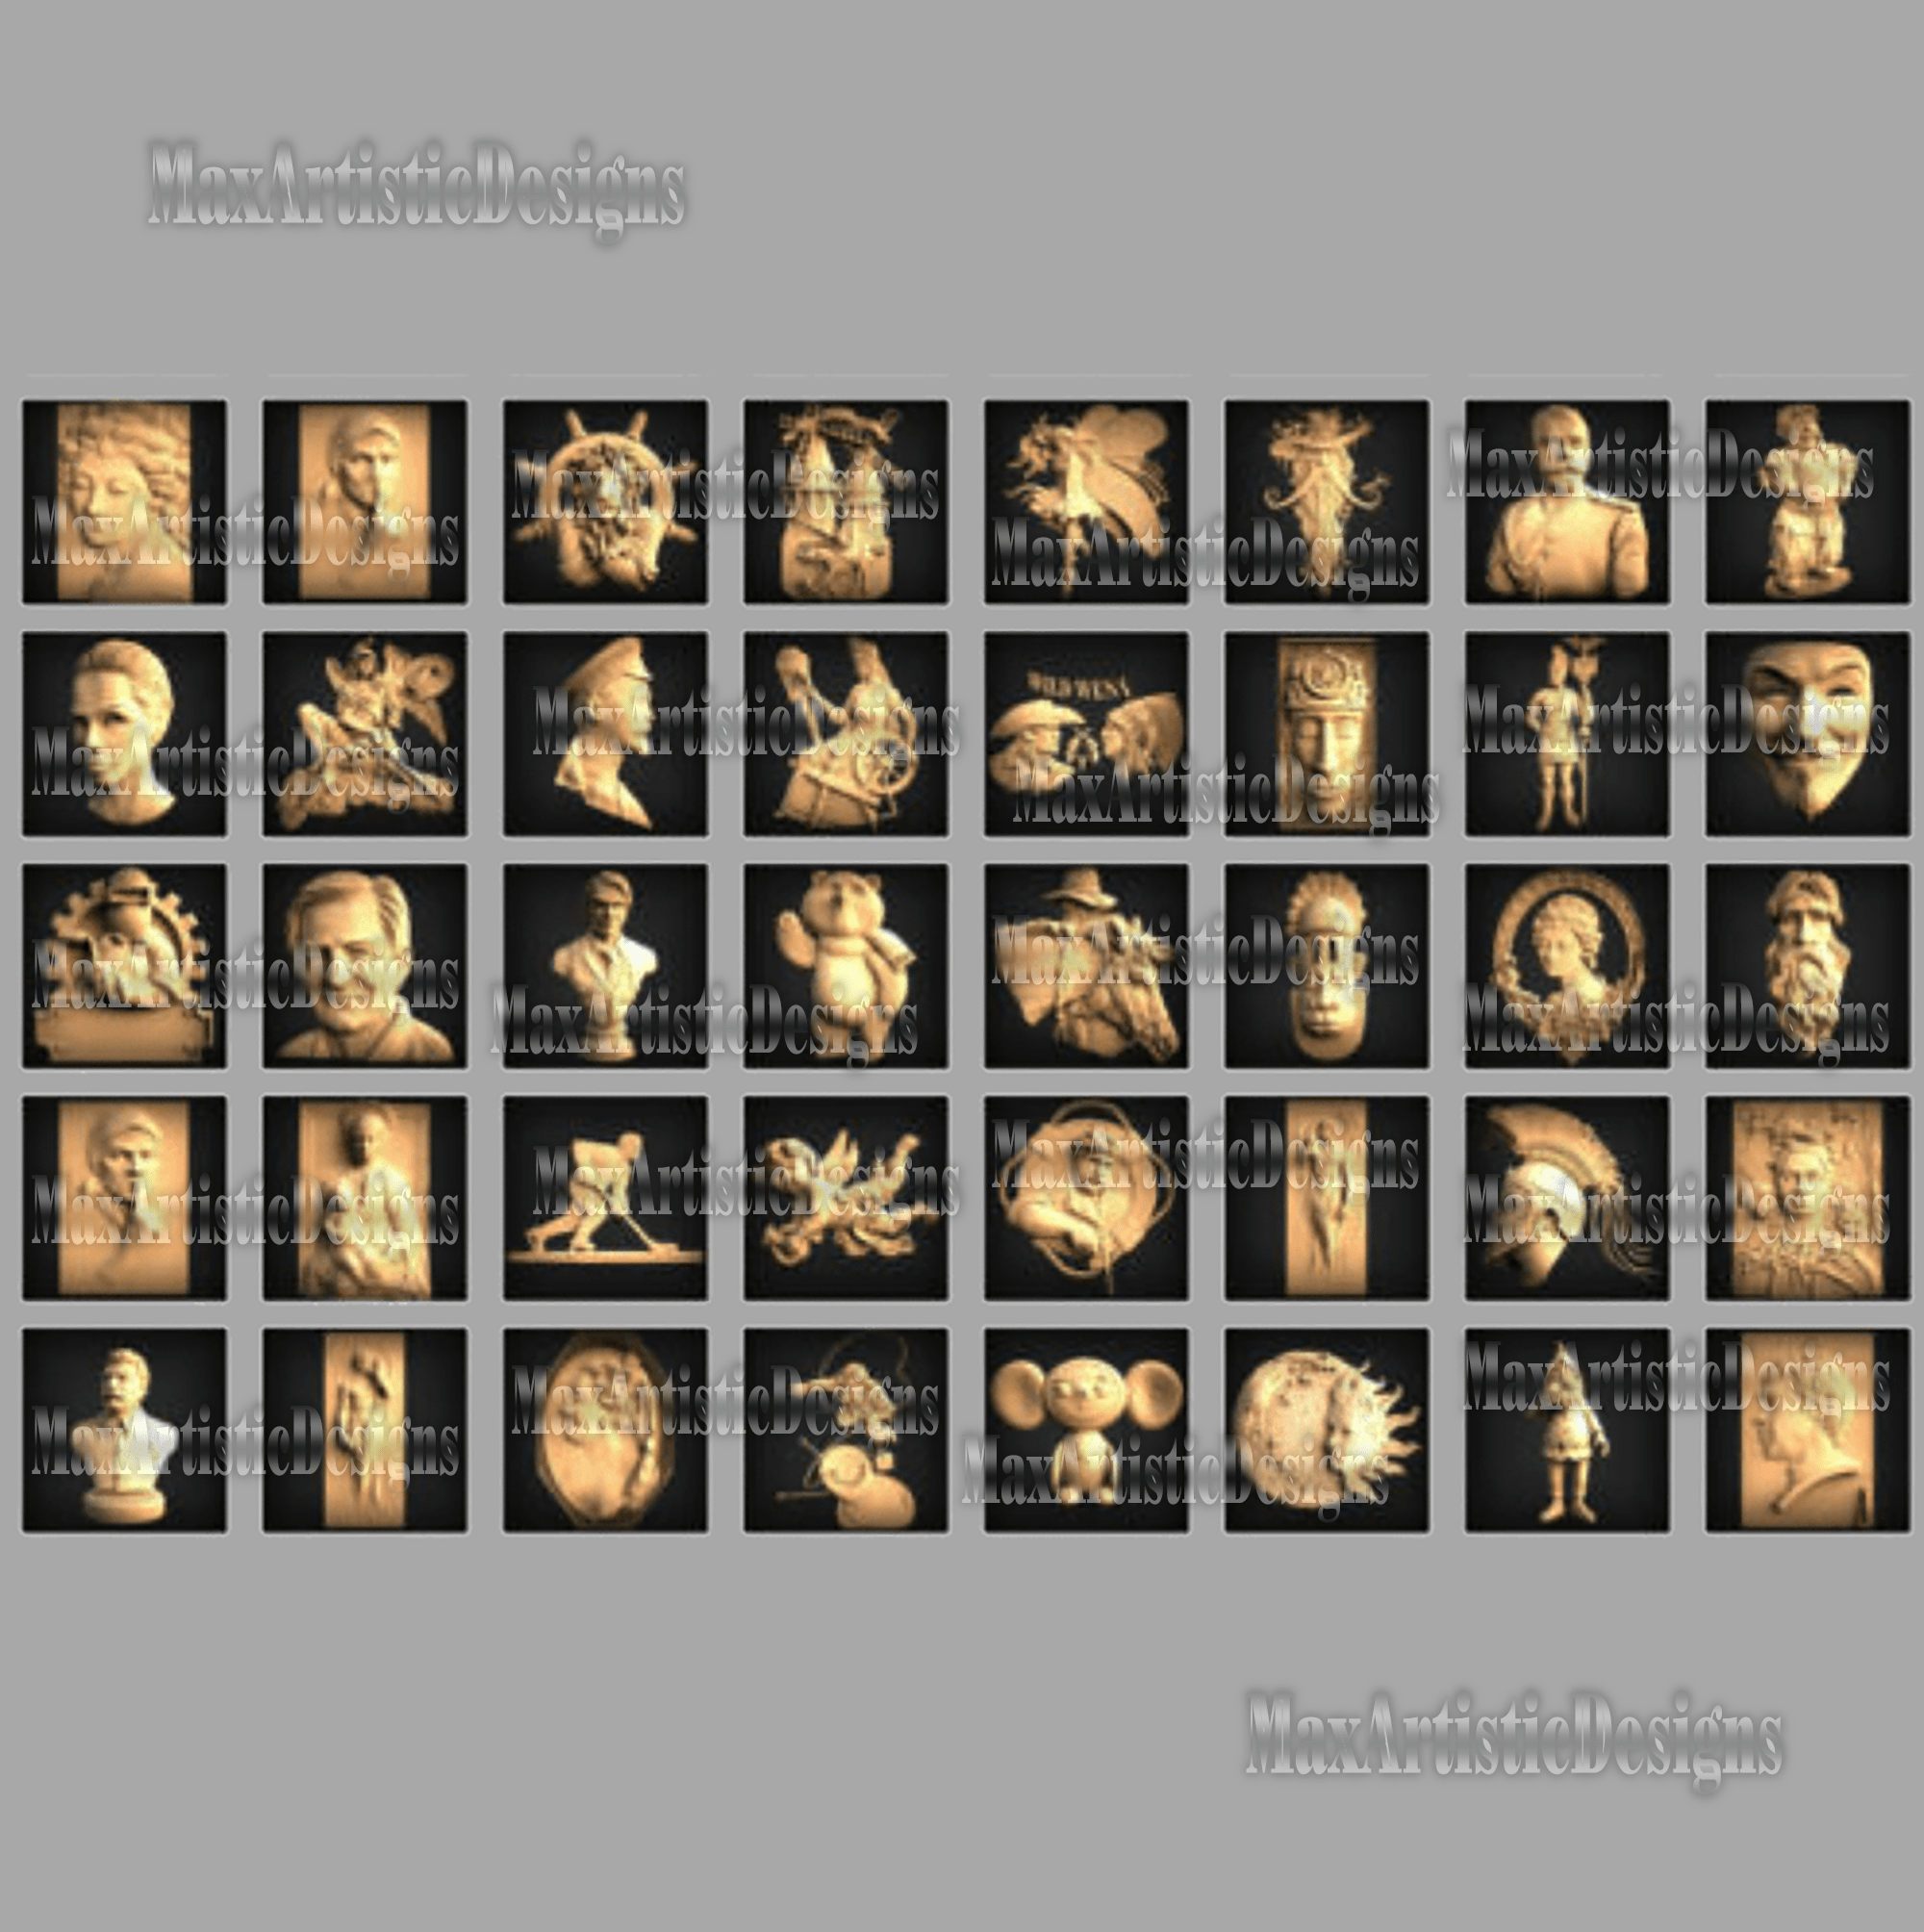 140 modelos 3d stl Caras, máscaras, personajes antiguos grabado en relieve archivos tallados para máquinas cnc impresoras 3d